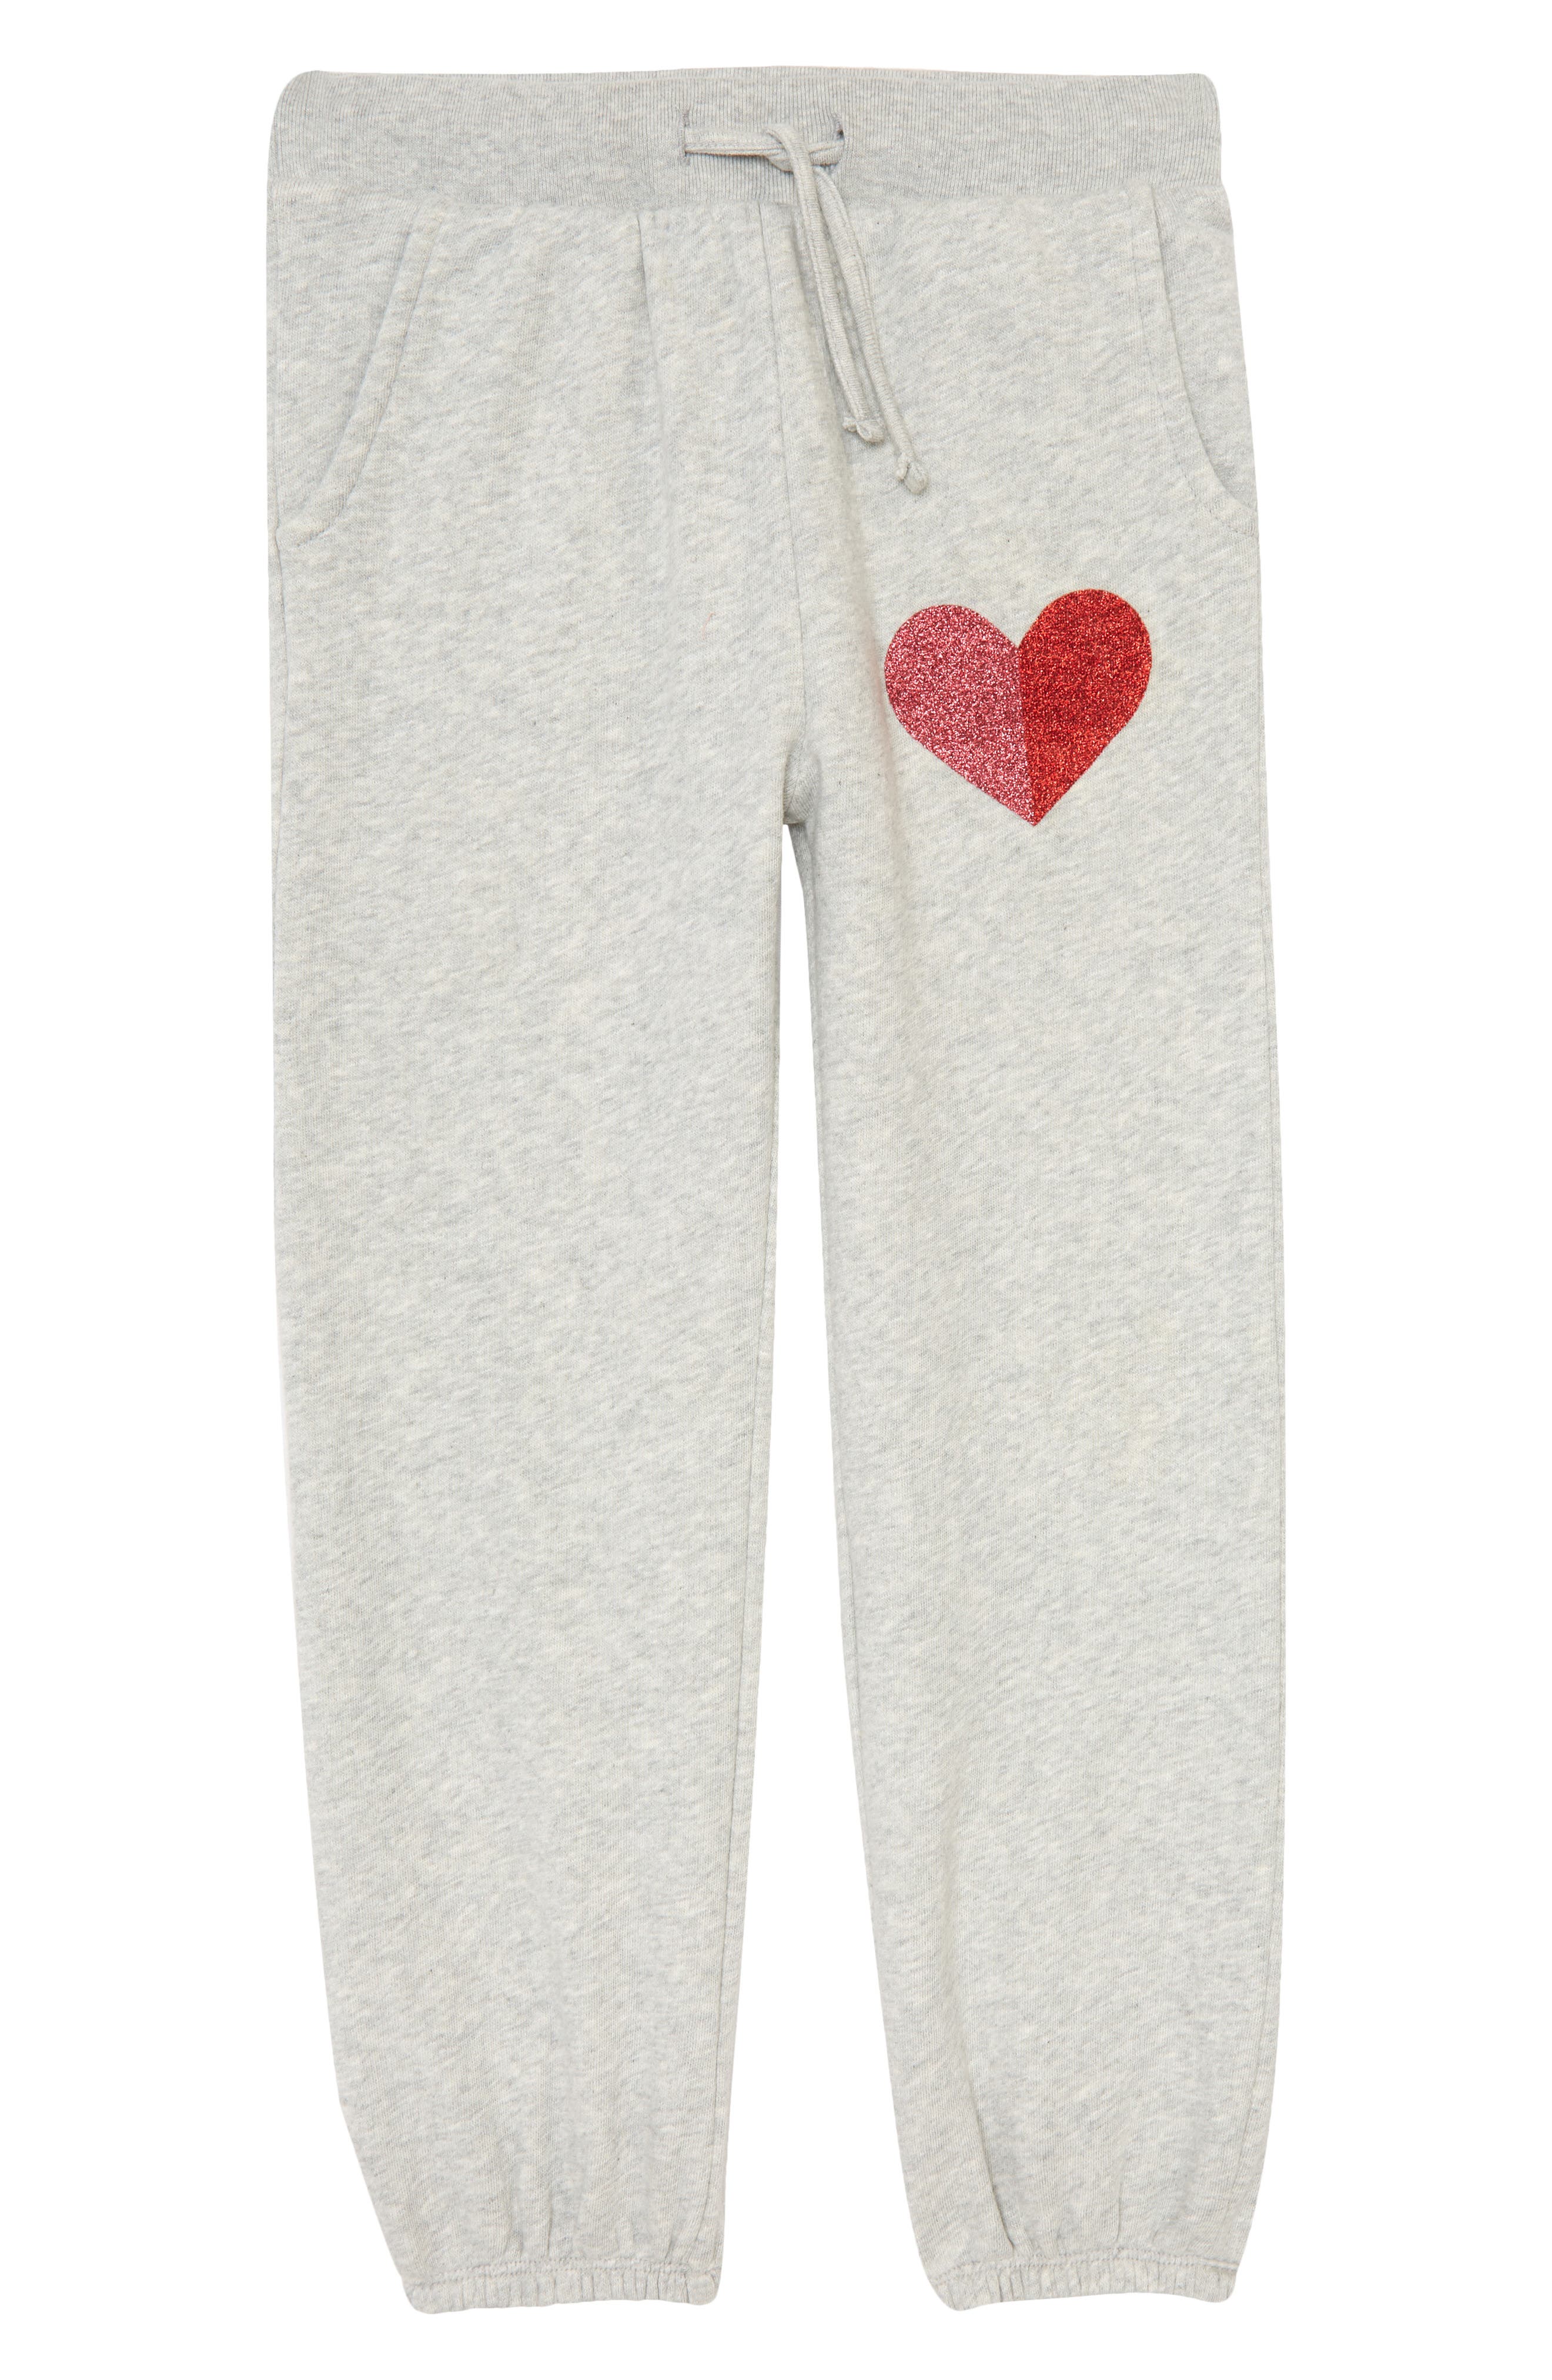 Fancy Pig Soft/Cozy Sweatpants Girls Warm Fleece Active Pants for Teen Boy